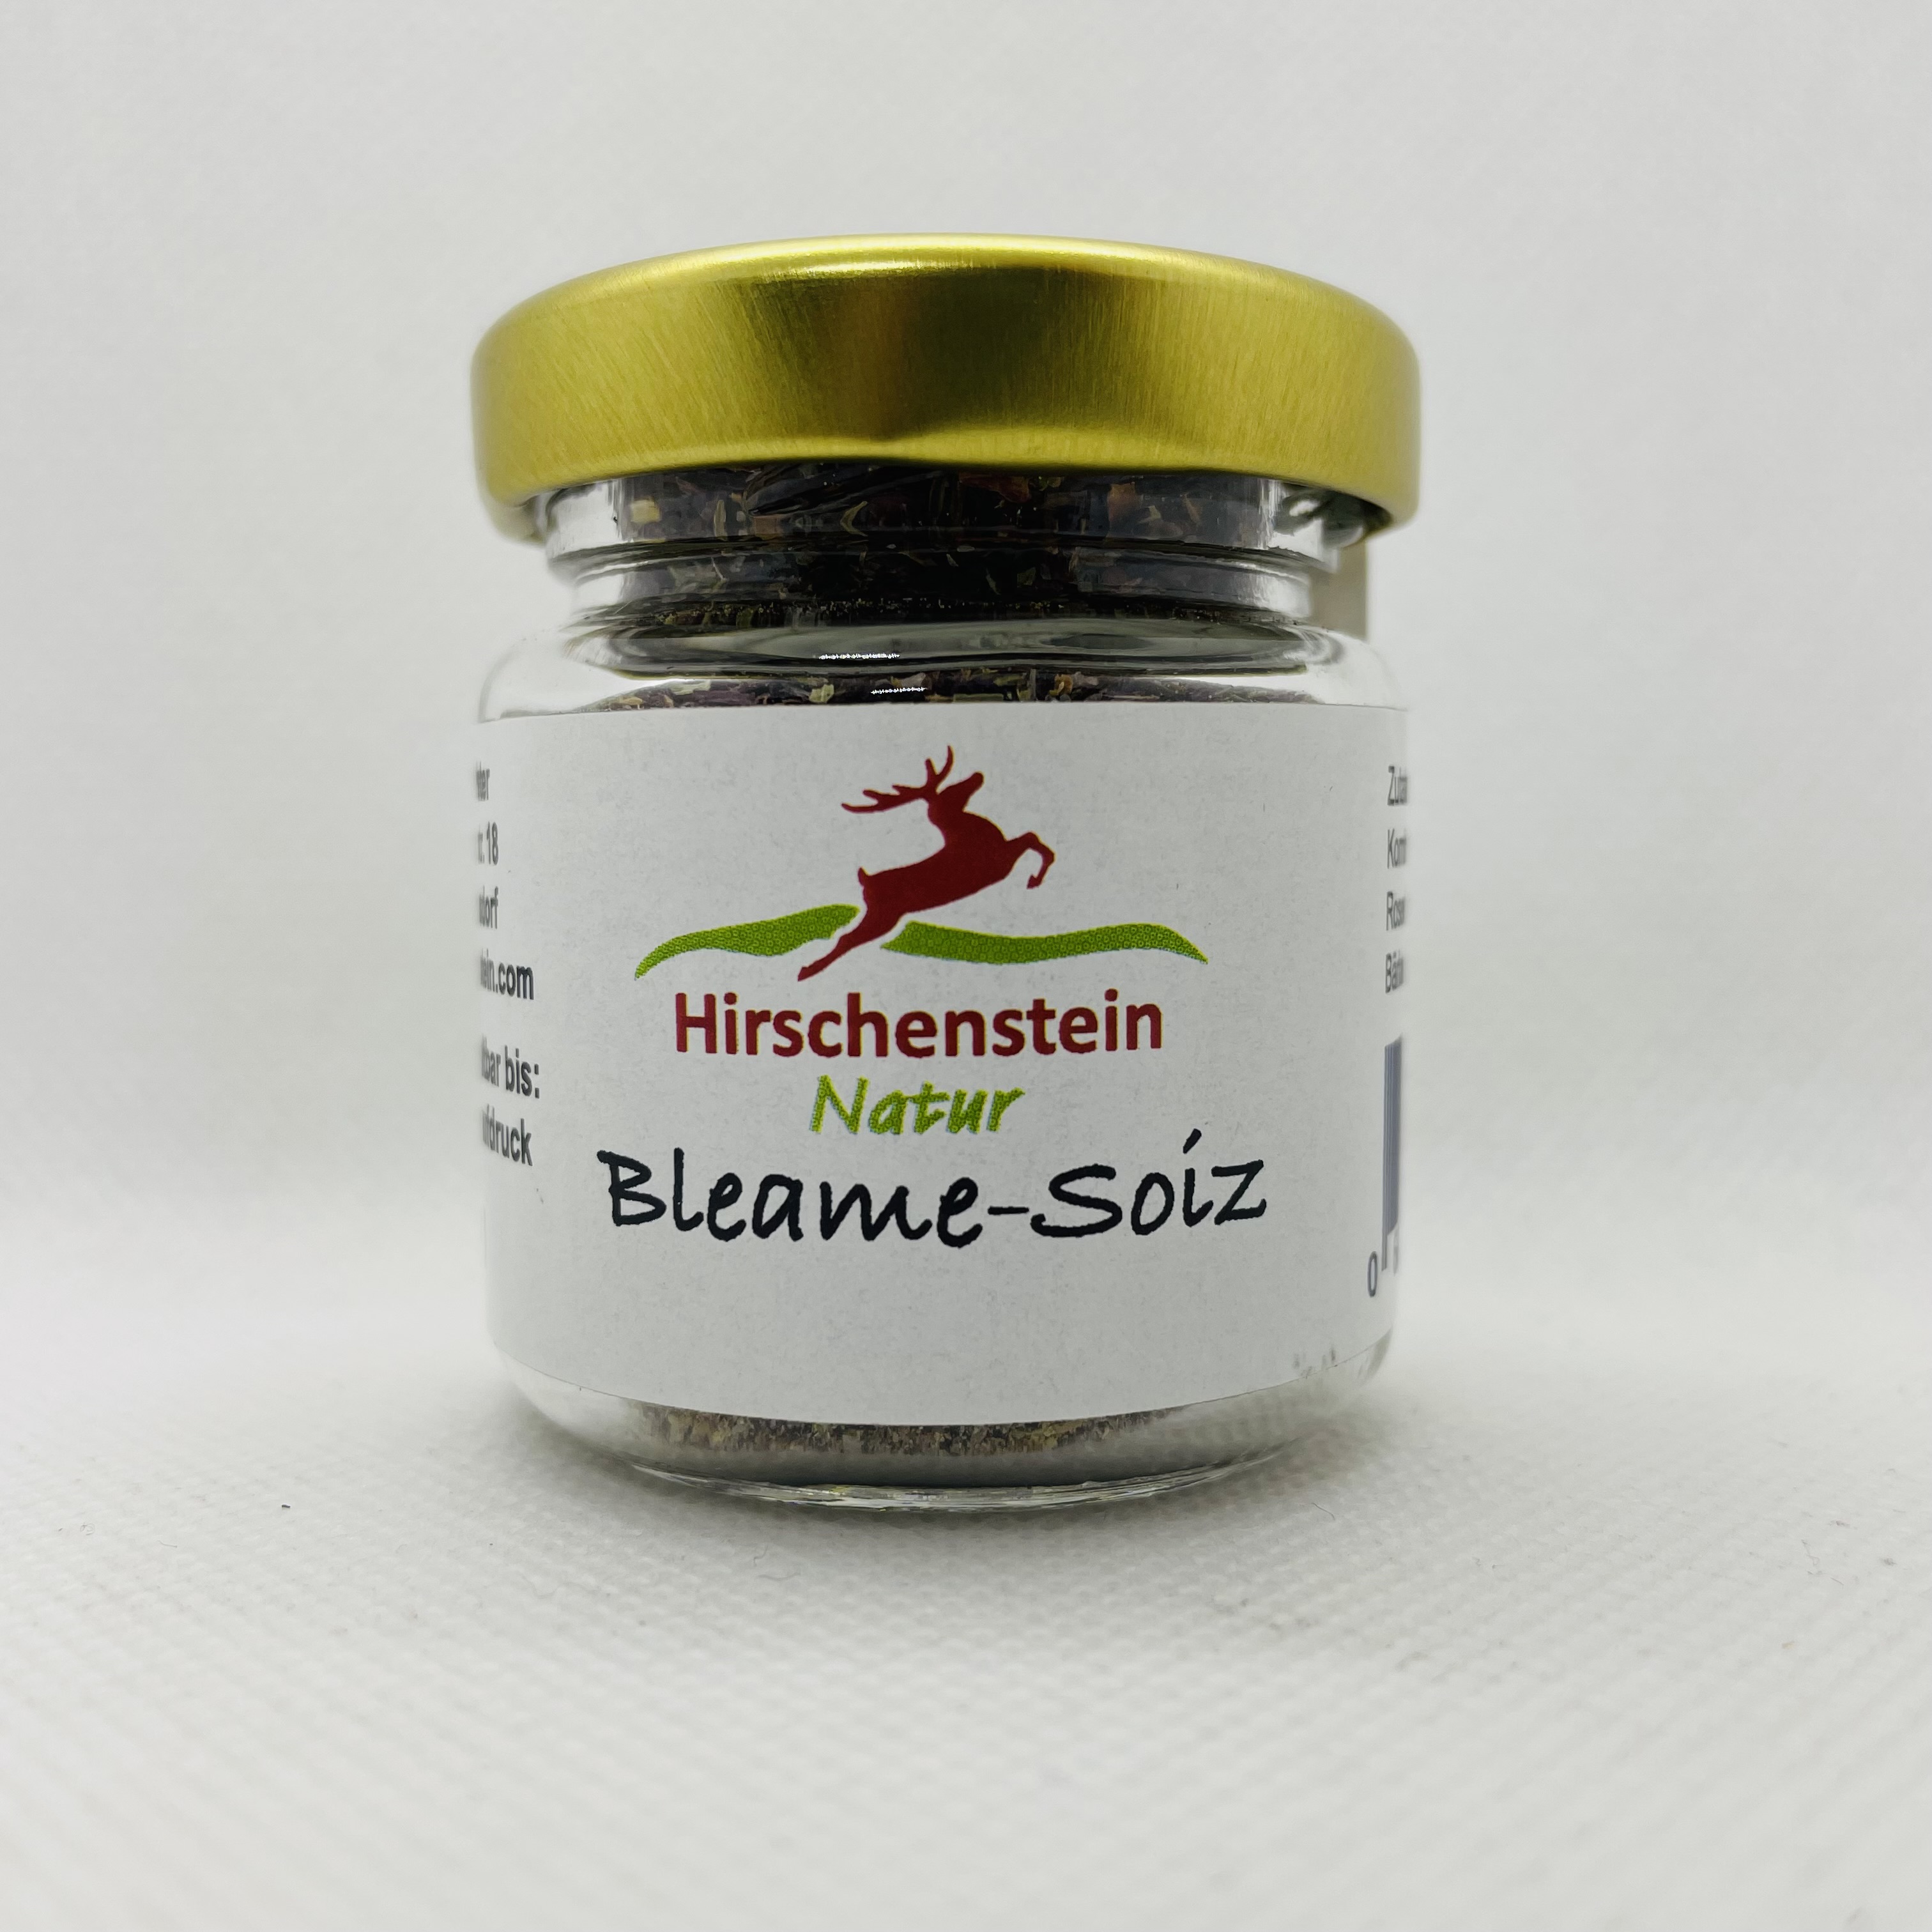 Bleame-Salz von Hirschenstein Natur. Foto: ARBERLAND REGio GmbH.